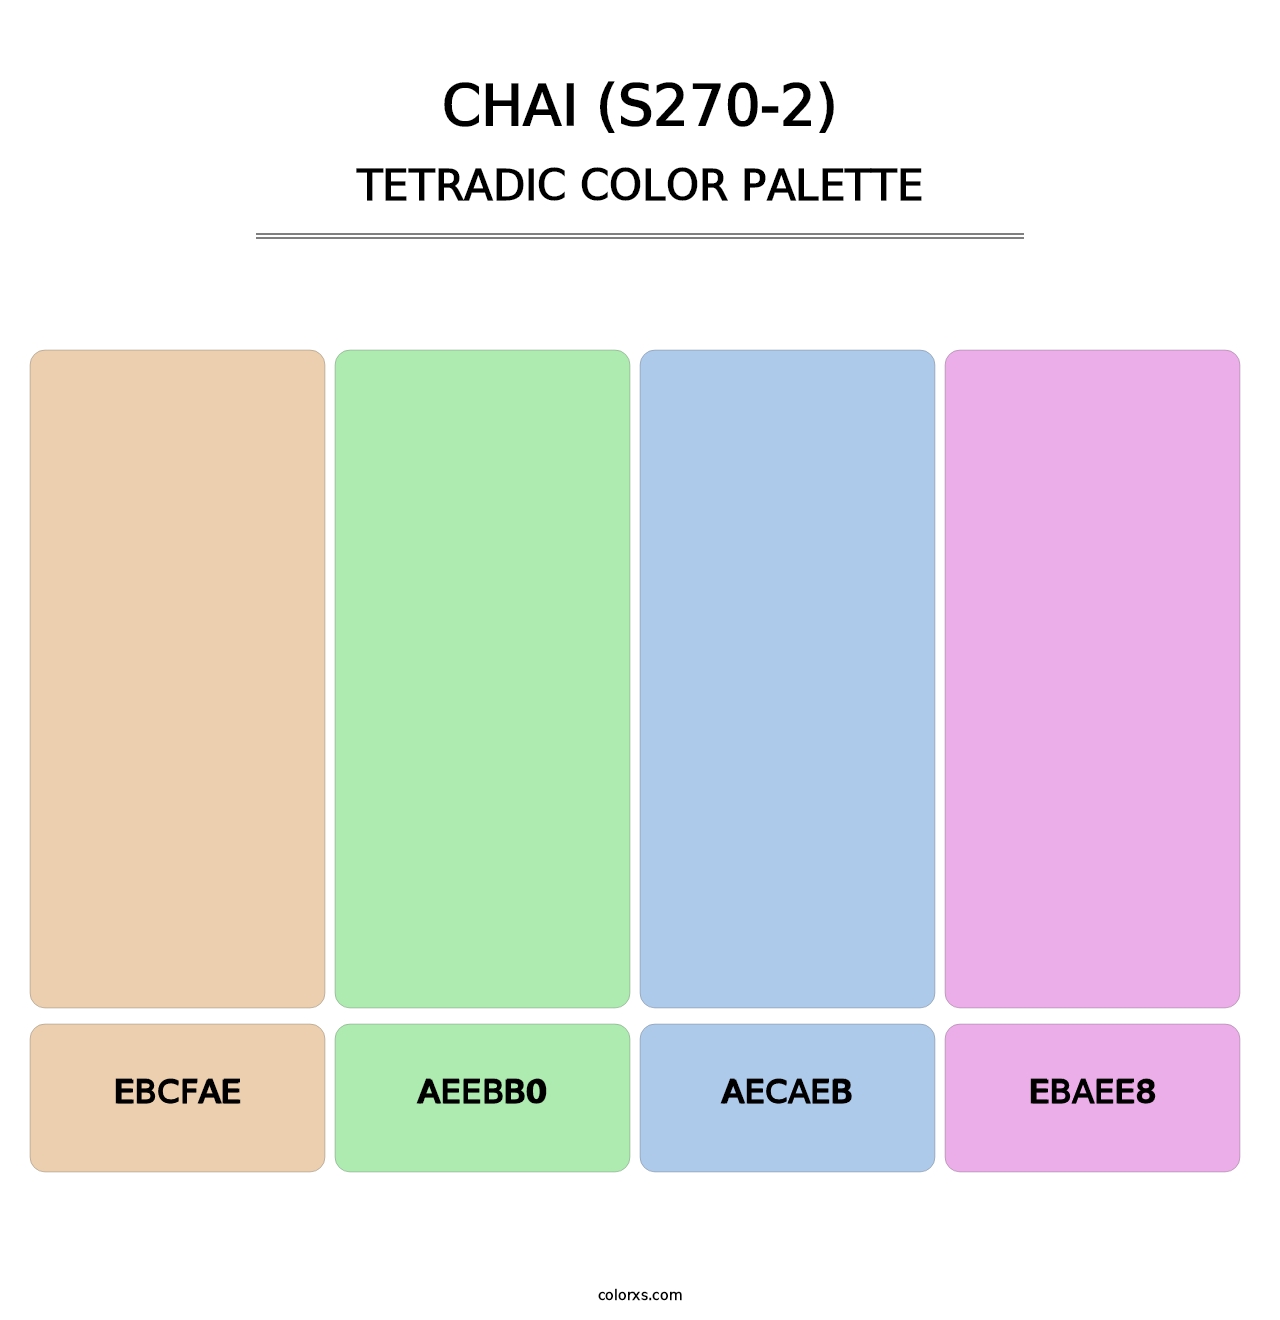 Chai (S270-2) - Tetradic Color Palette